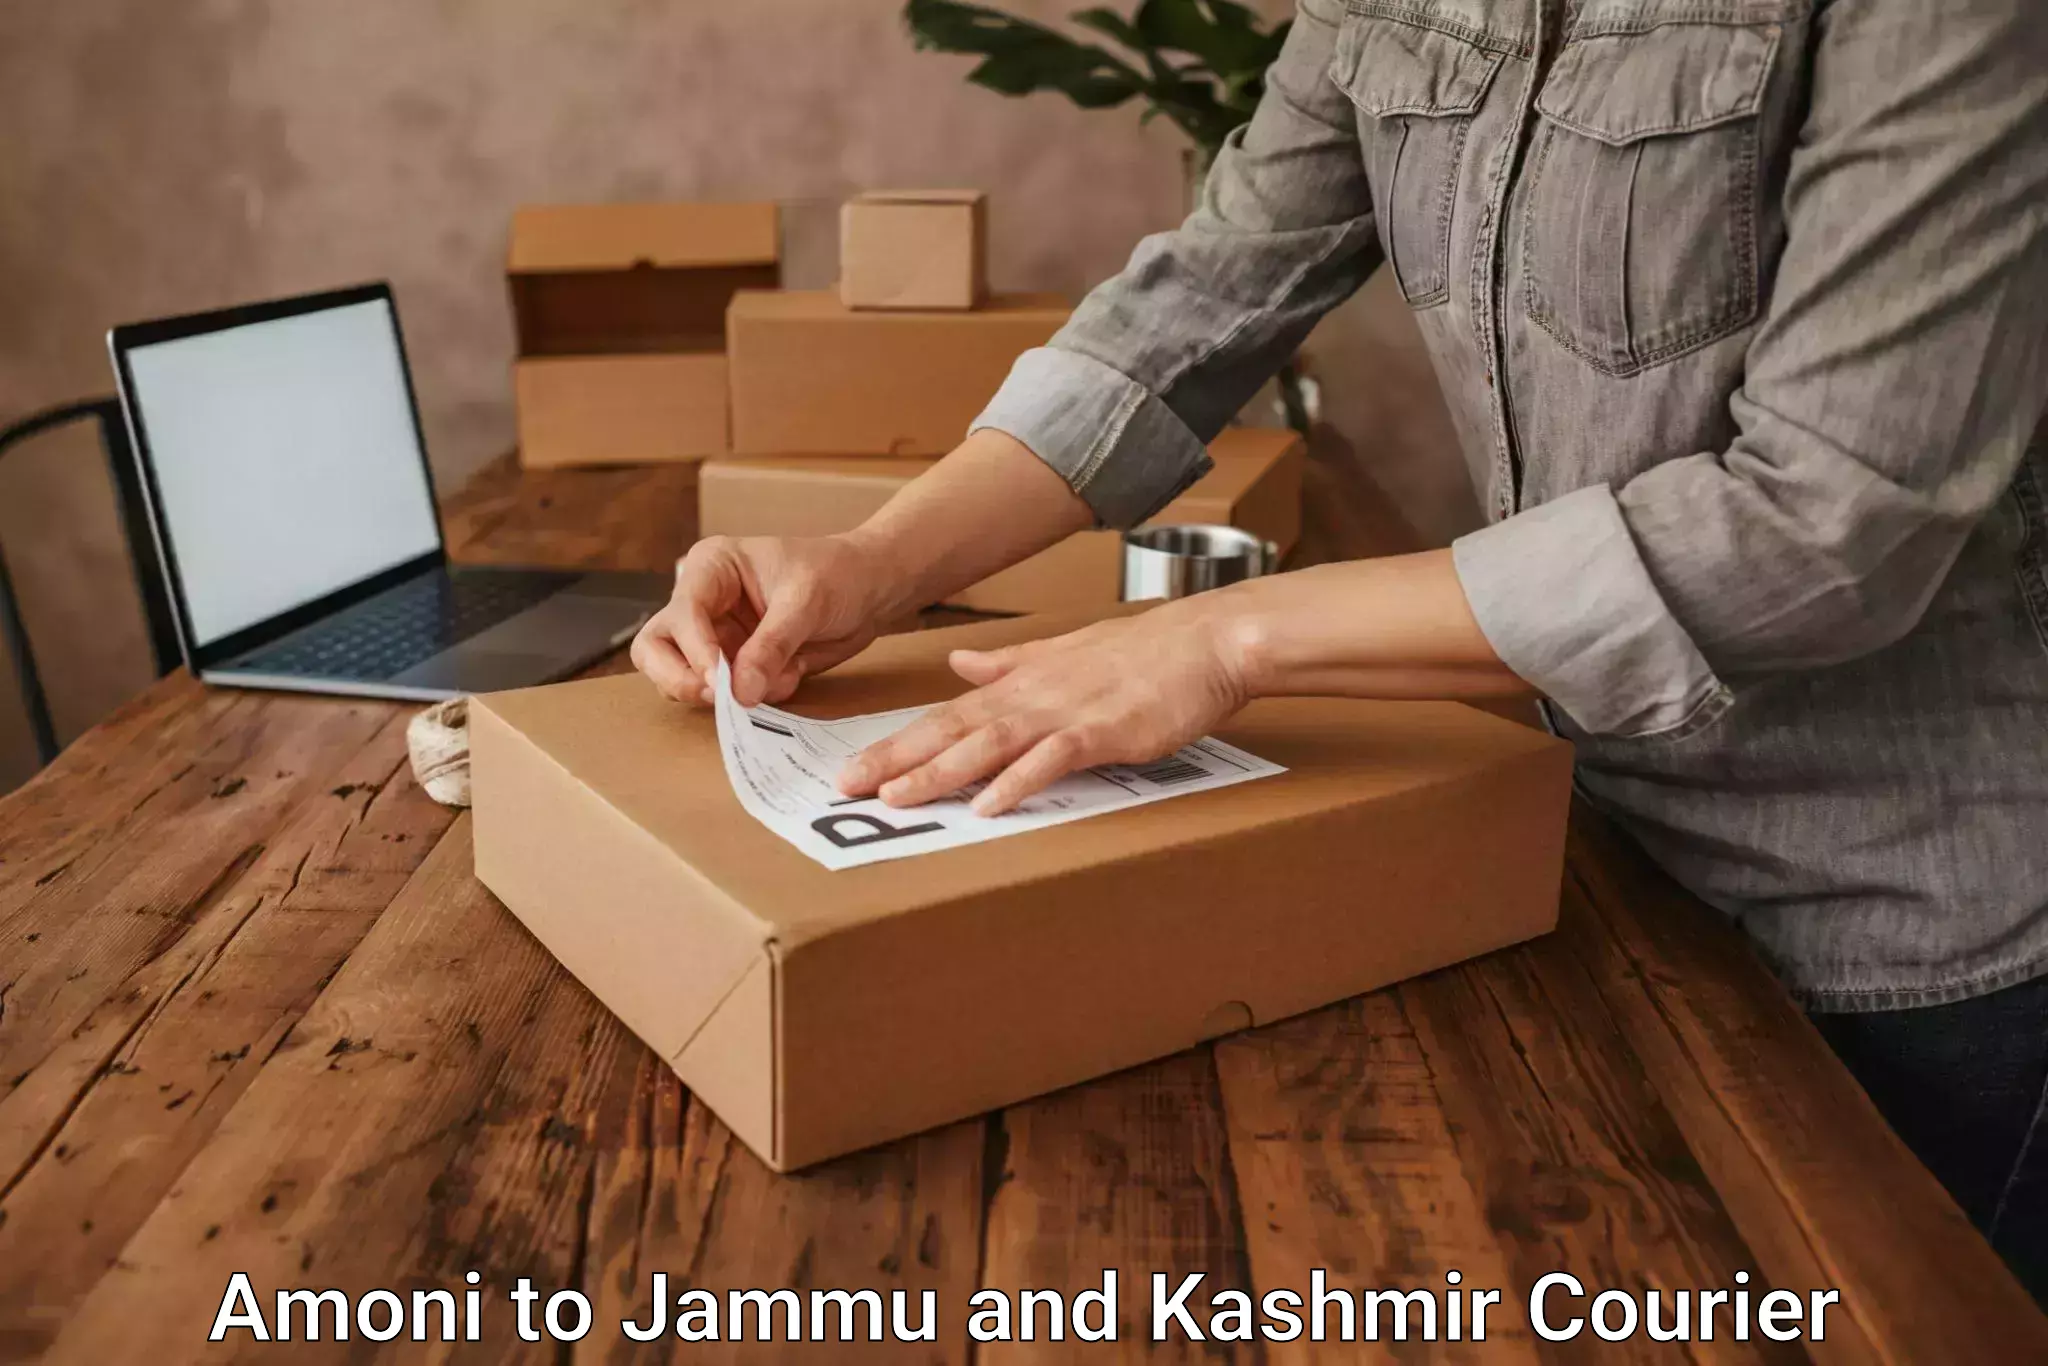 Urgent courier needs Amoni to University of Jammu